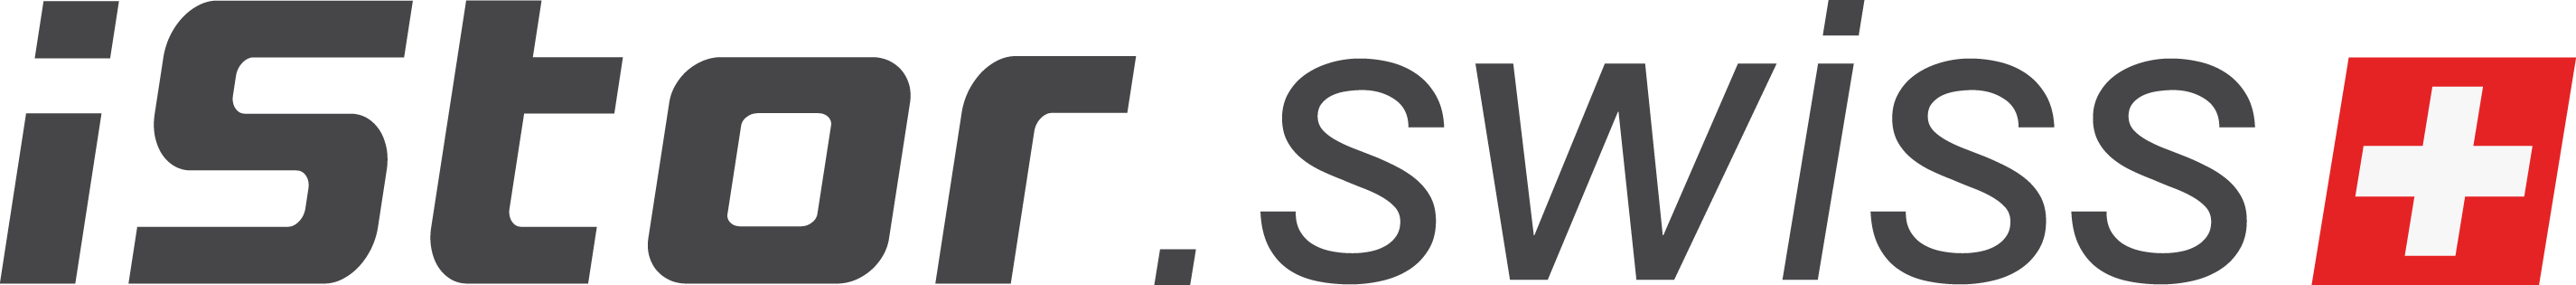 iStor swiss logo vector v2 Teja Slana